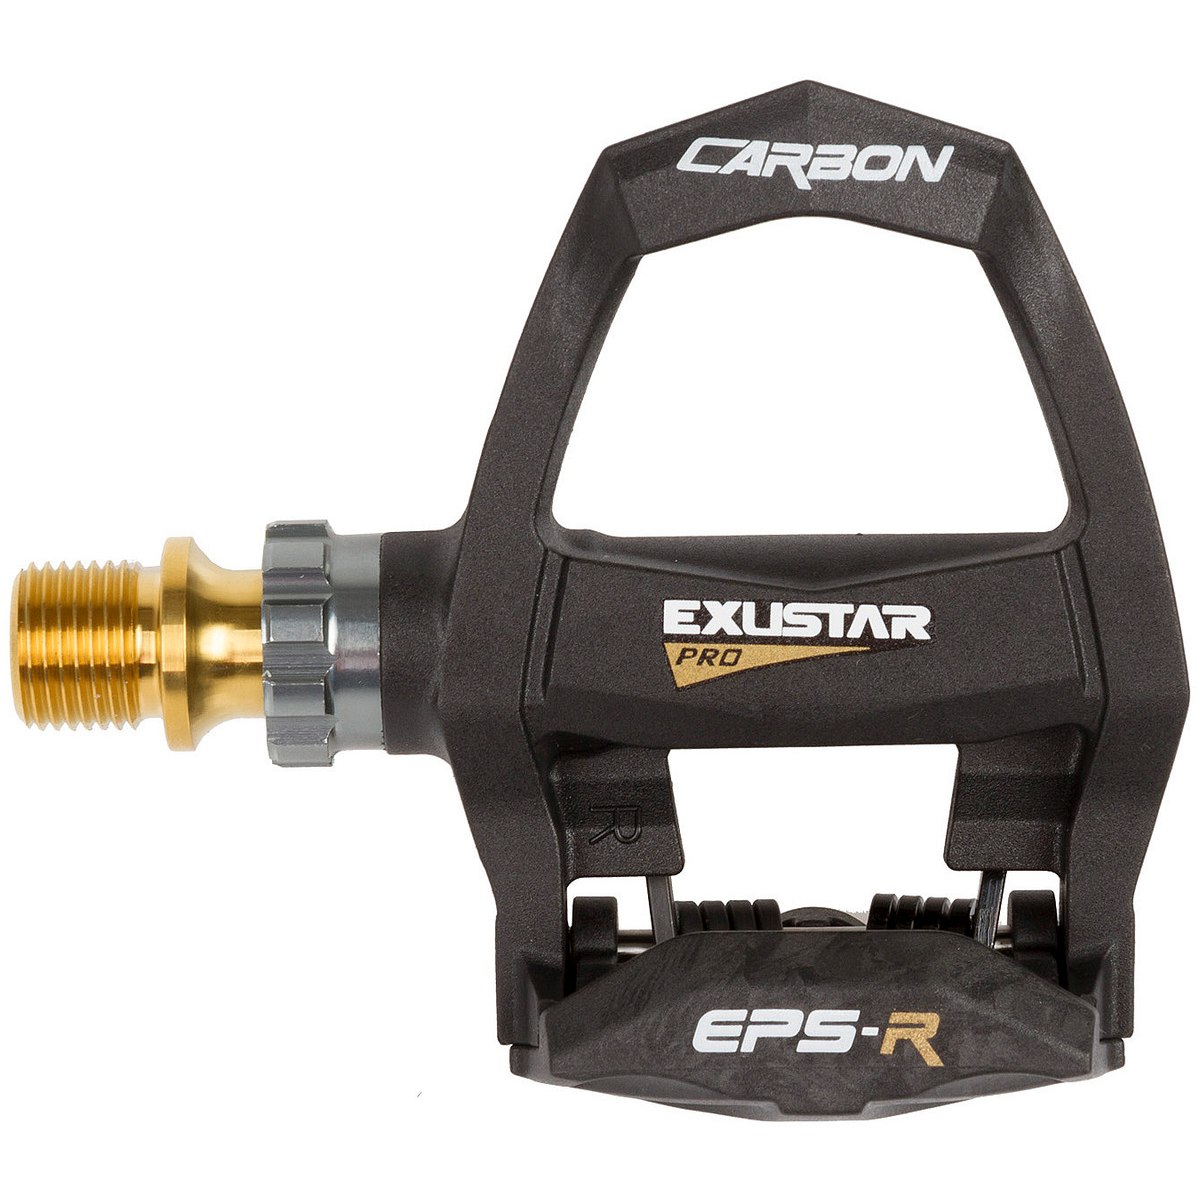 Productfoto van Exustar E-PR200CKTI Pedal